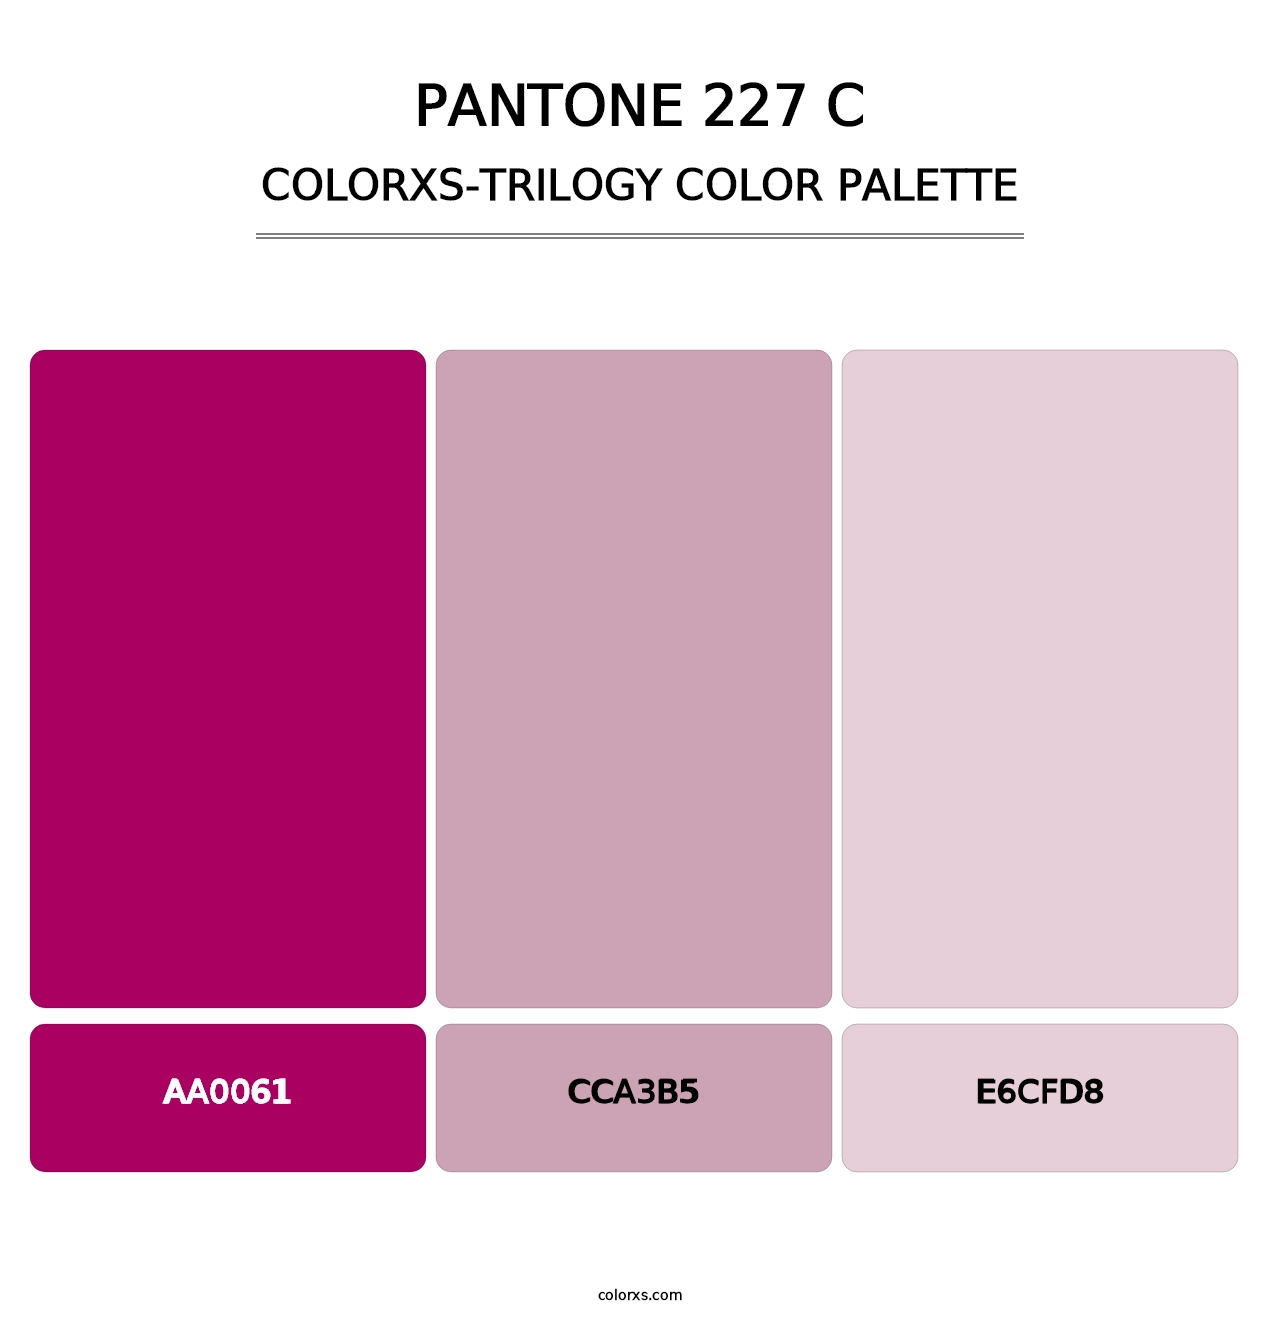 PANTONE 227 C - Colorxs Trilogy Palette